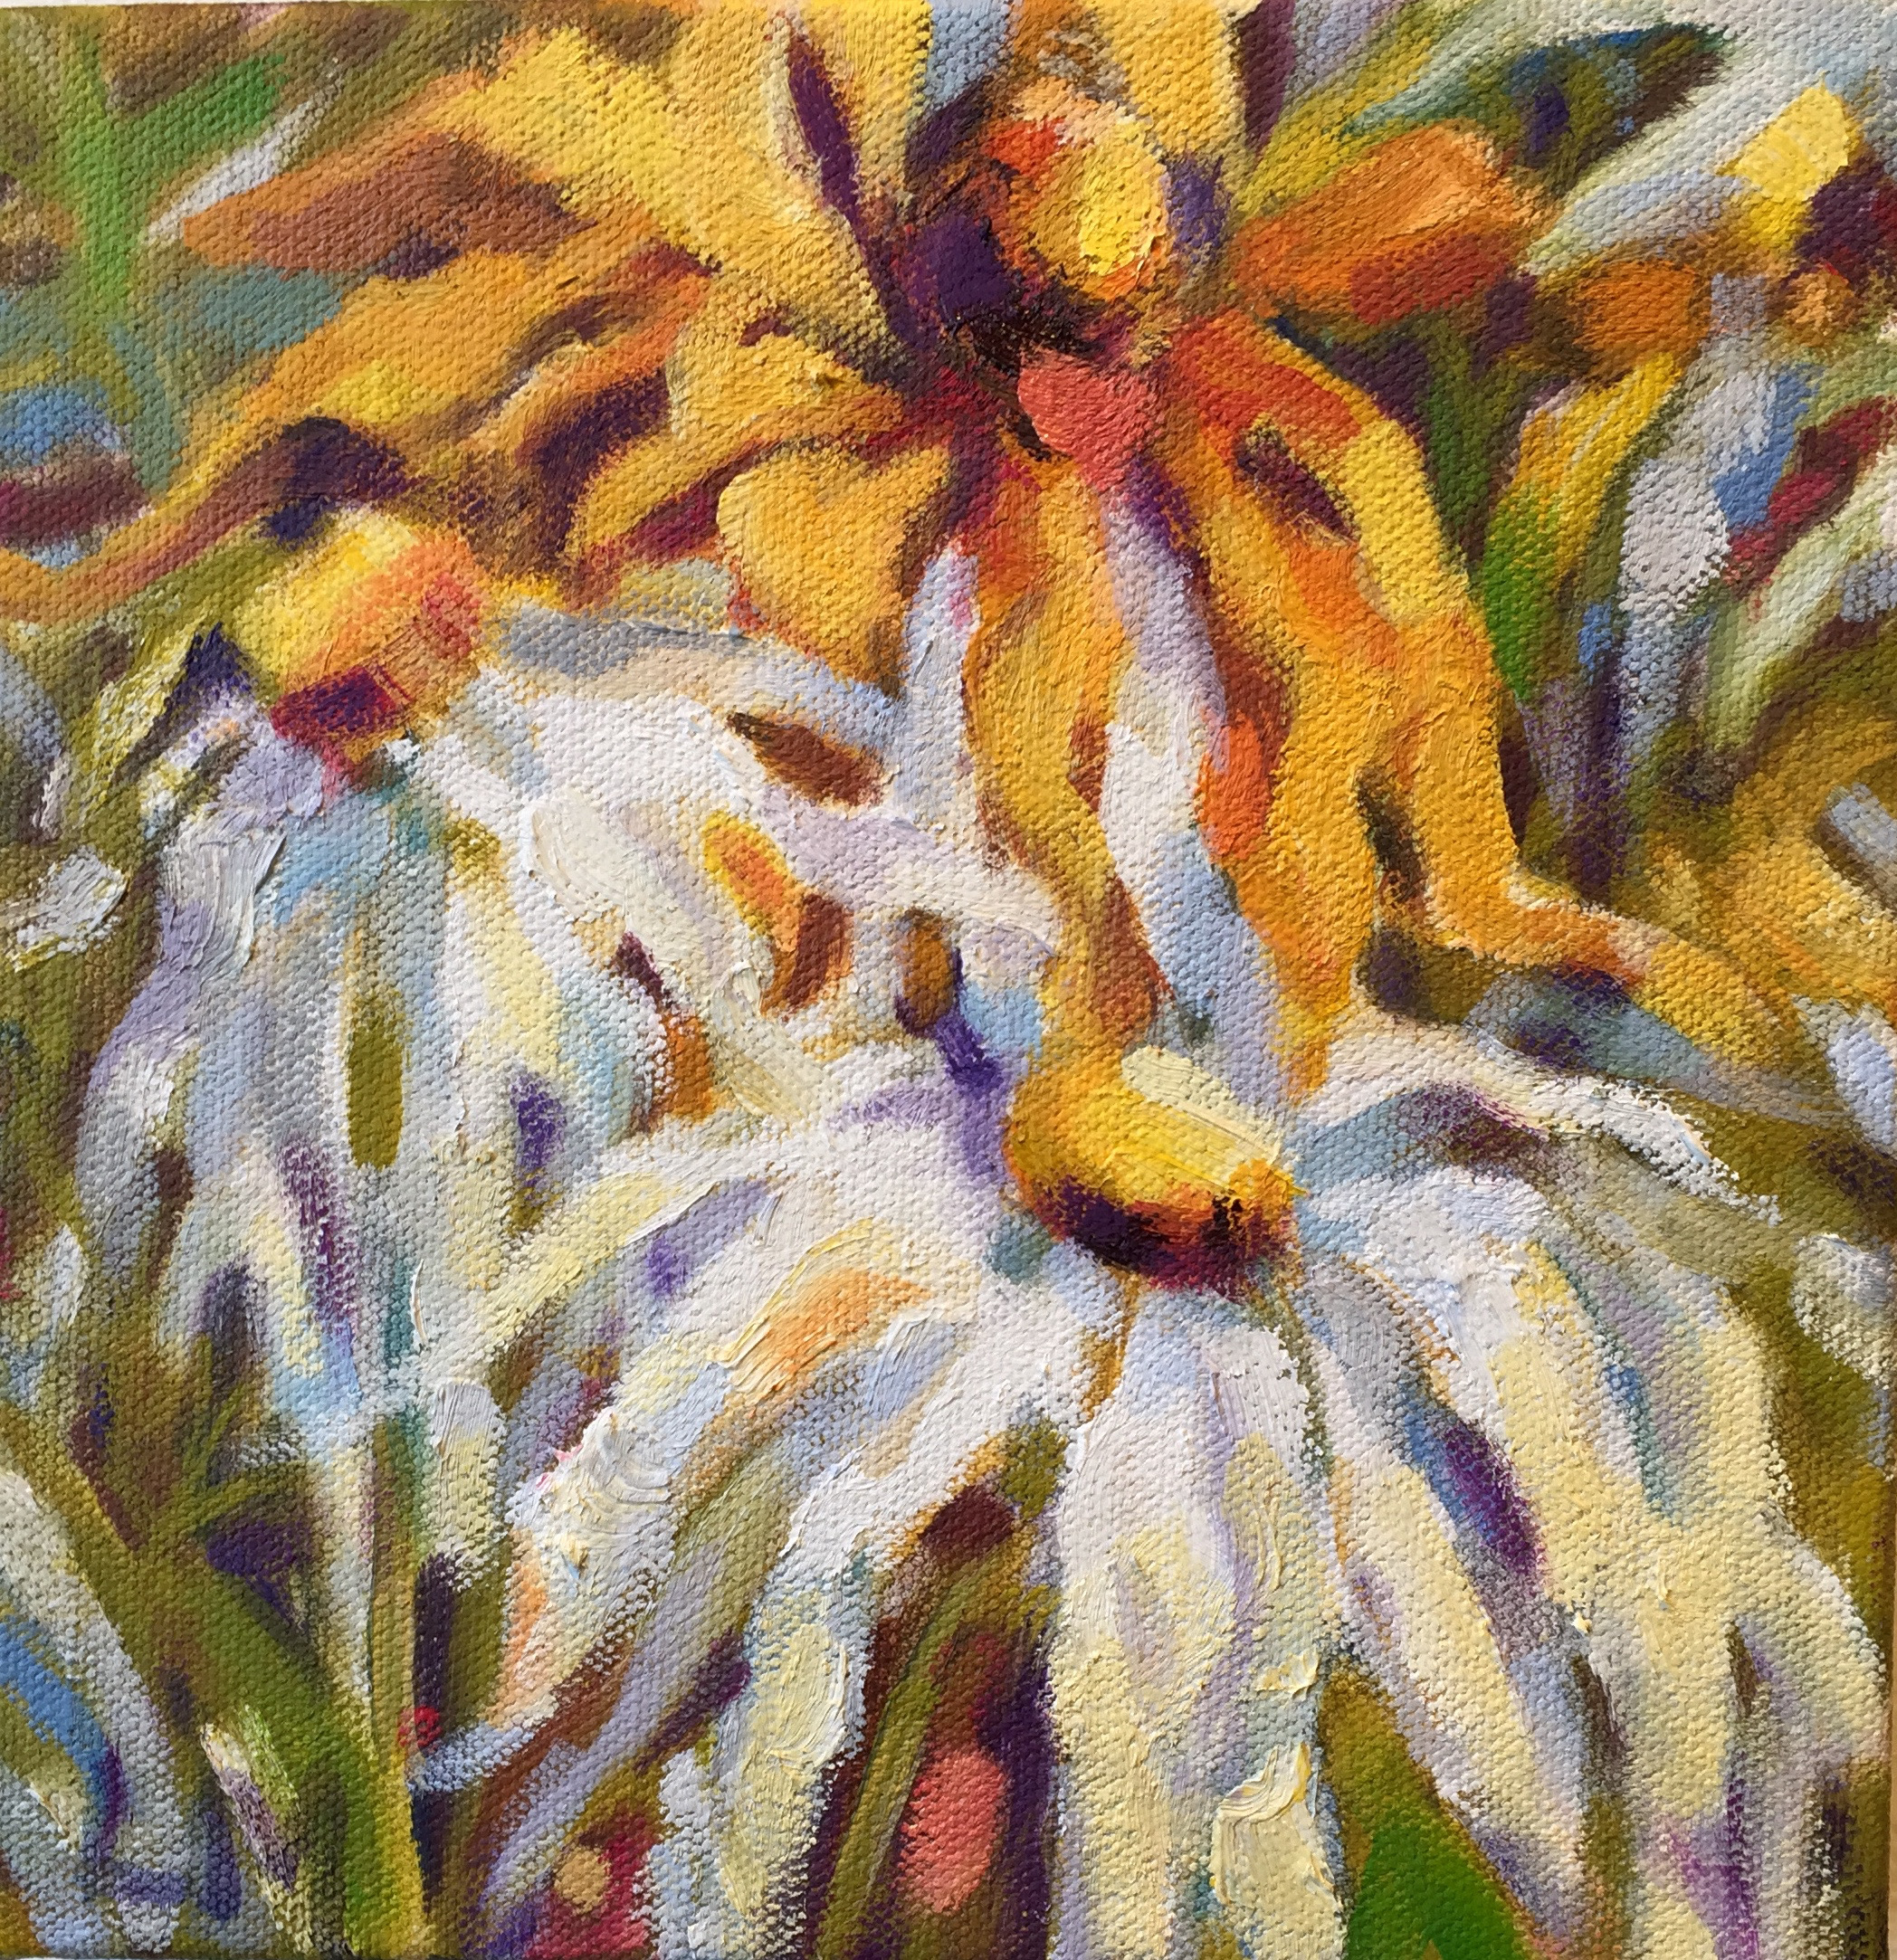 Daisies, oils, 8 x8